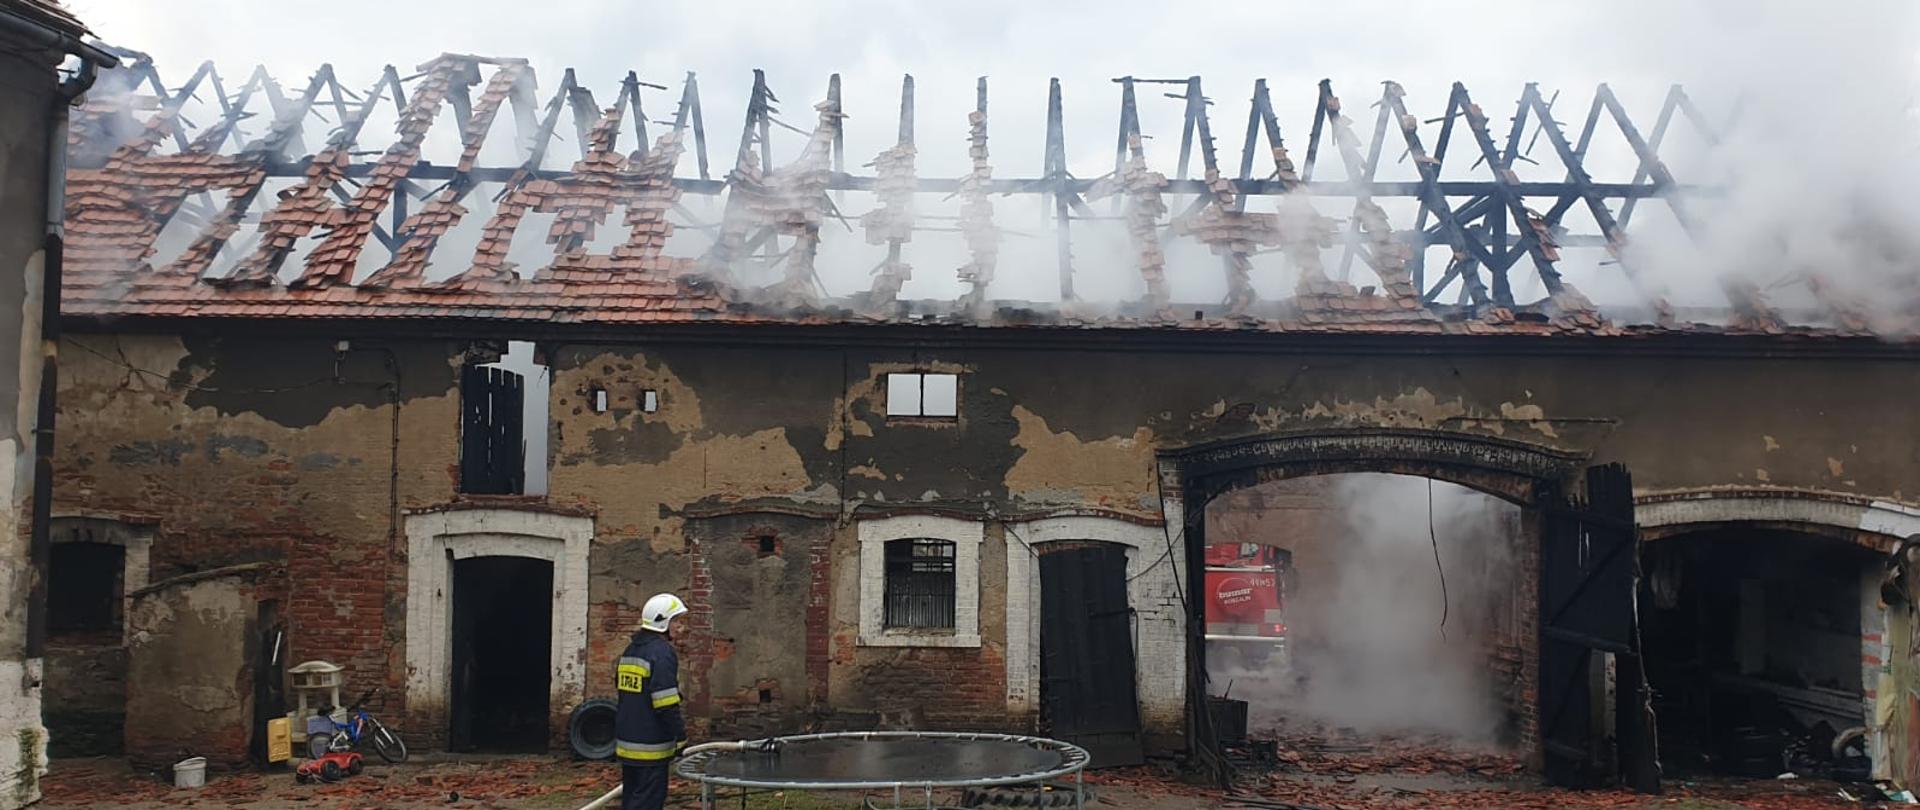 Obraz przedstawia budynek stodoły po pożarze. Widoczna spalona więźba dachowa. Z wnętrza wydobywa się dym i para wodna.